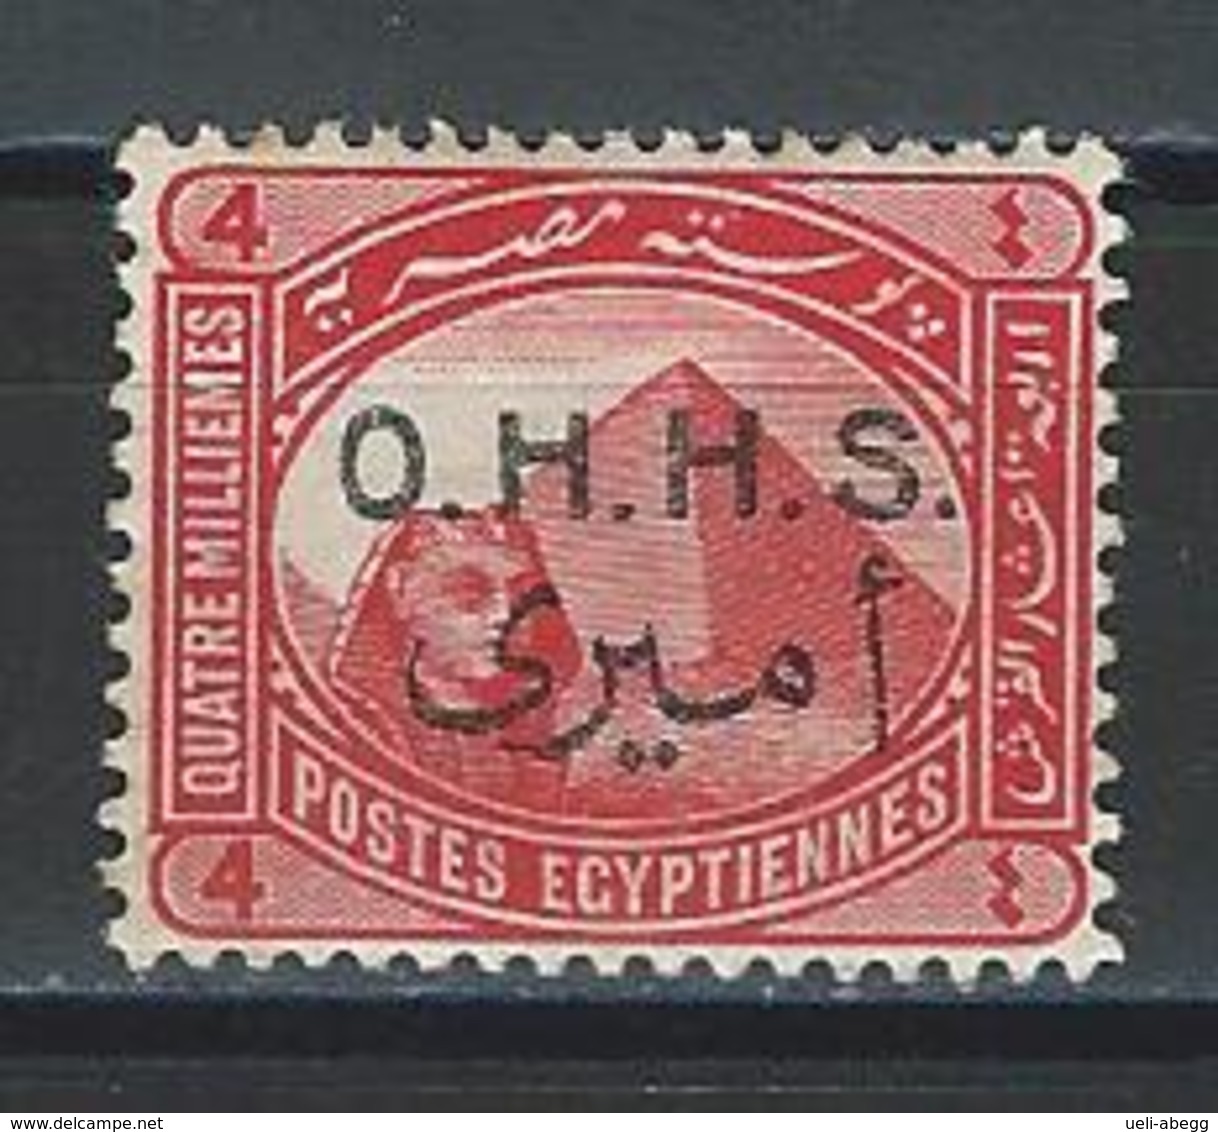 Ägypten SG O89, Mi D15 * MH - 1915-1921 Protettorato Britannico